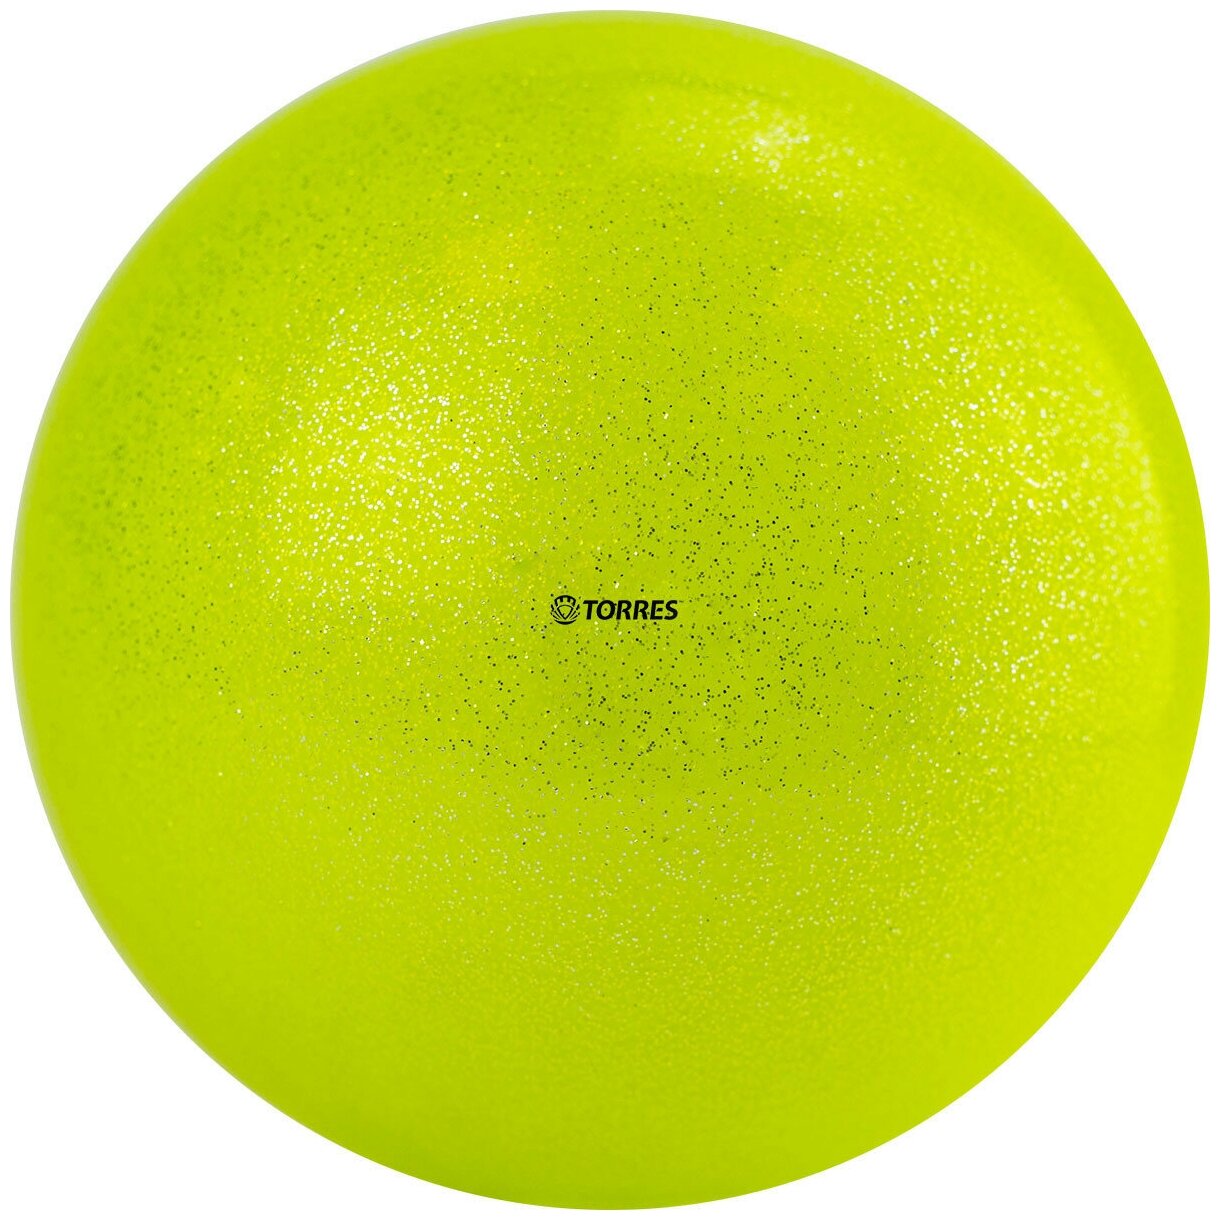 Мяч для художественной гимнастики TORRES AGP-19-03, диаметр 19см, желтый с блестками